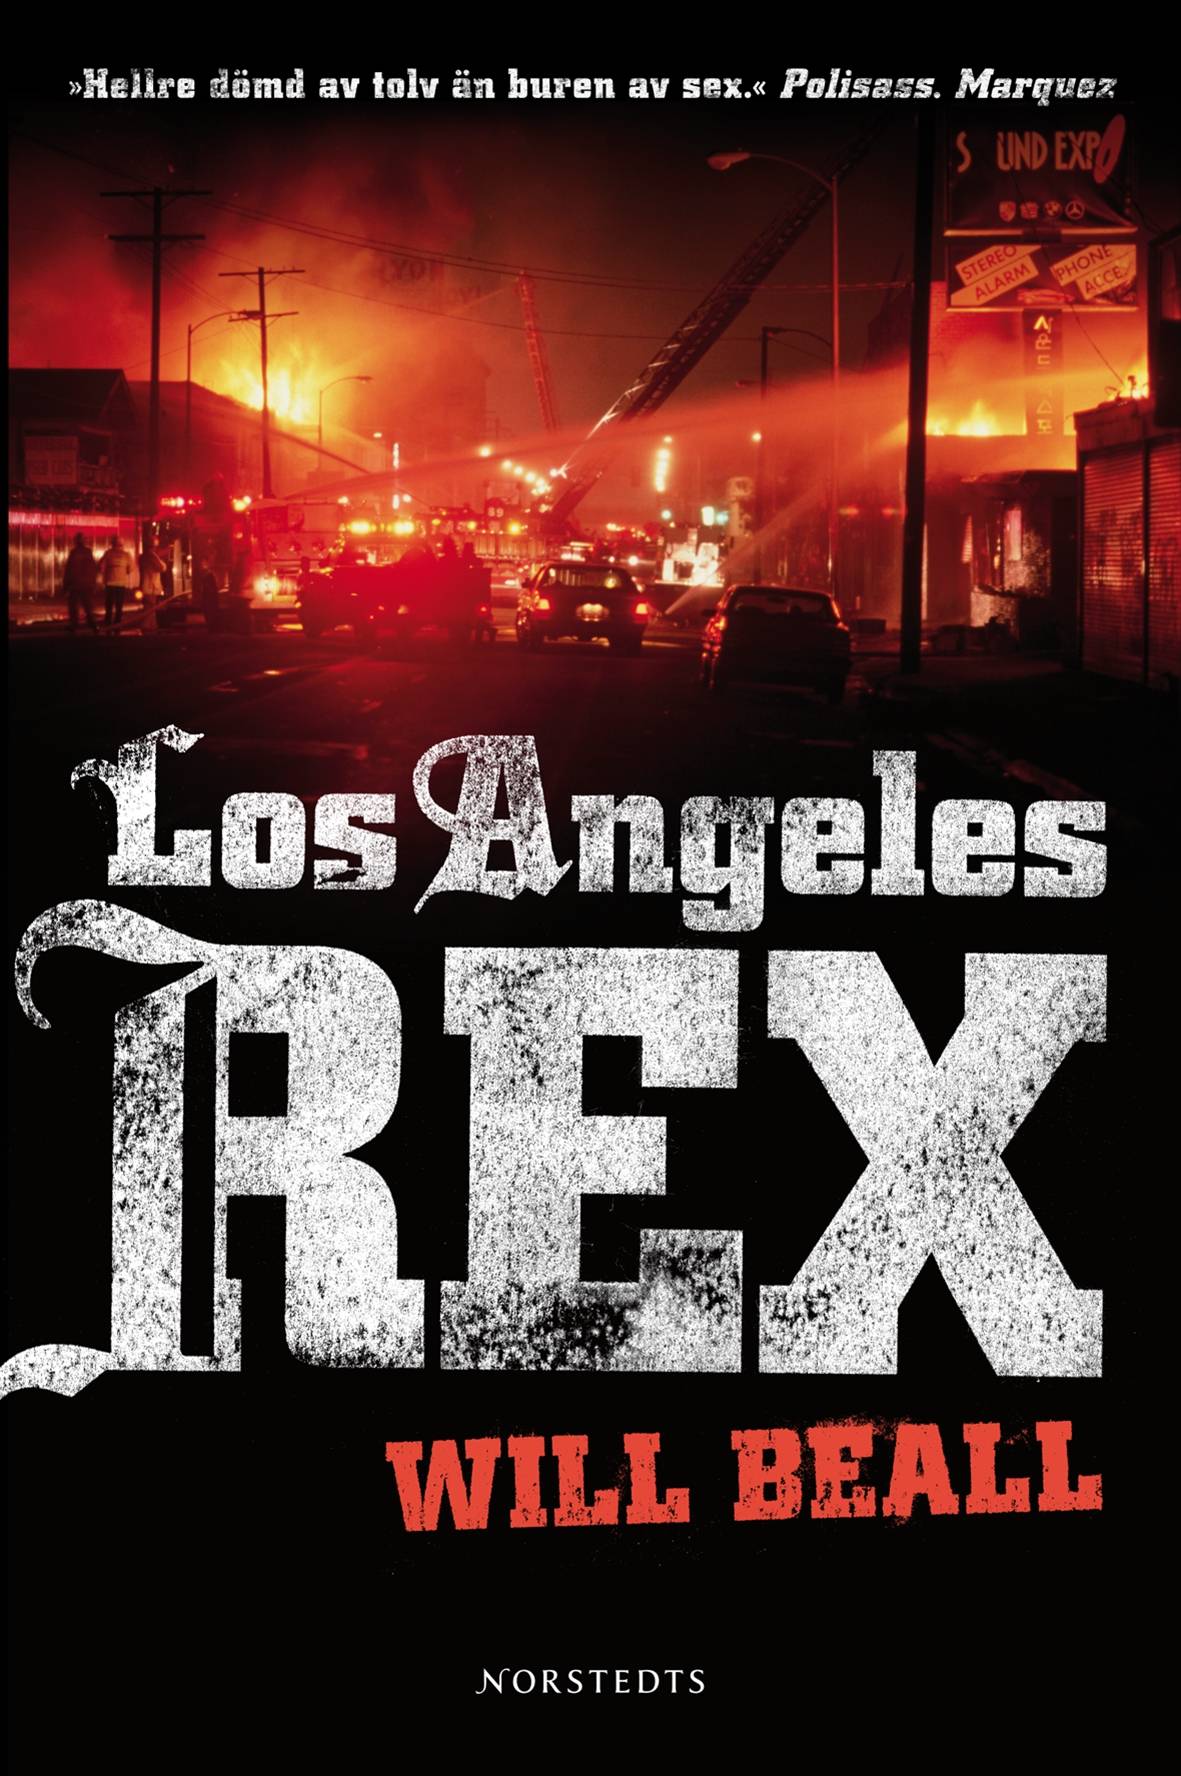 Los Angeles Rex